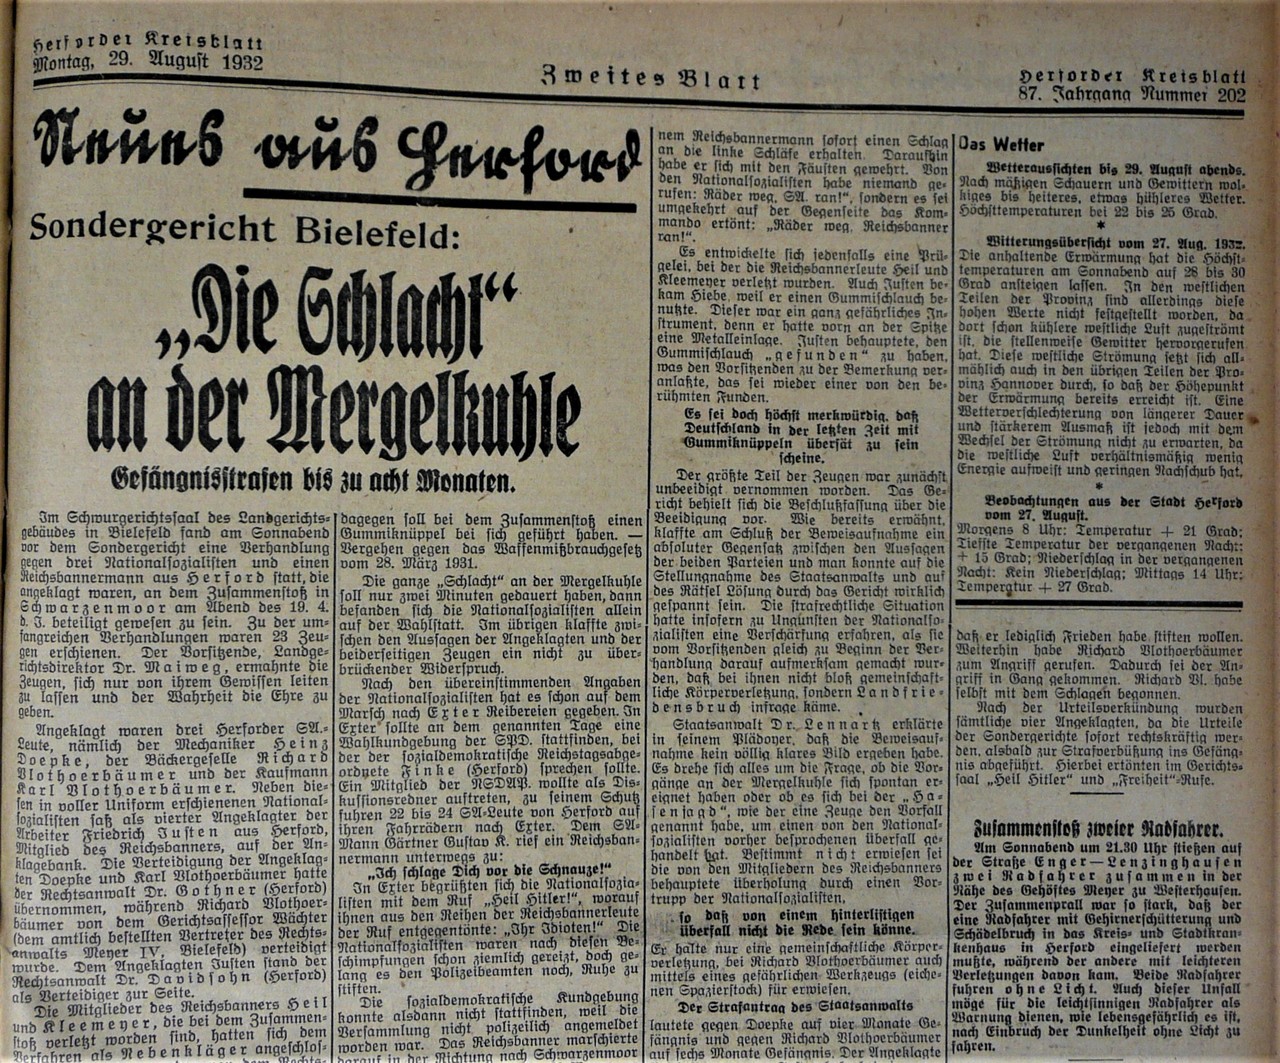 Bericht im Herforder Kreisblatt, 29.08.1932.